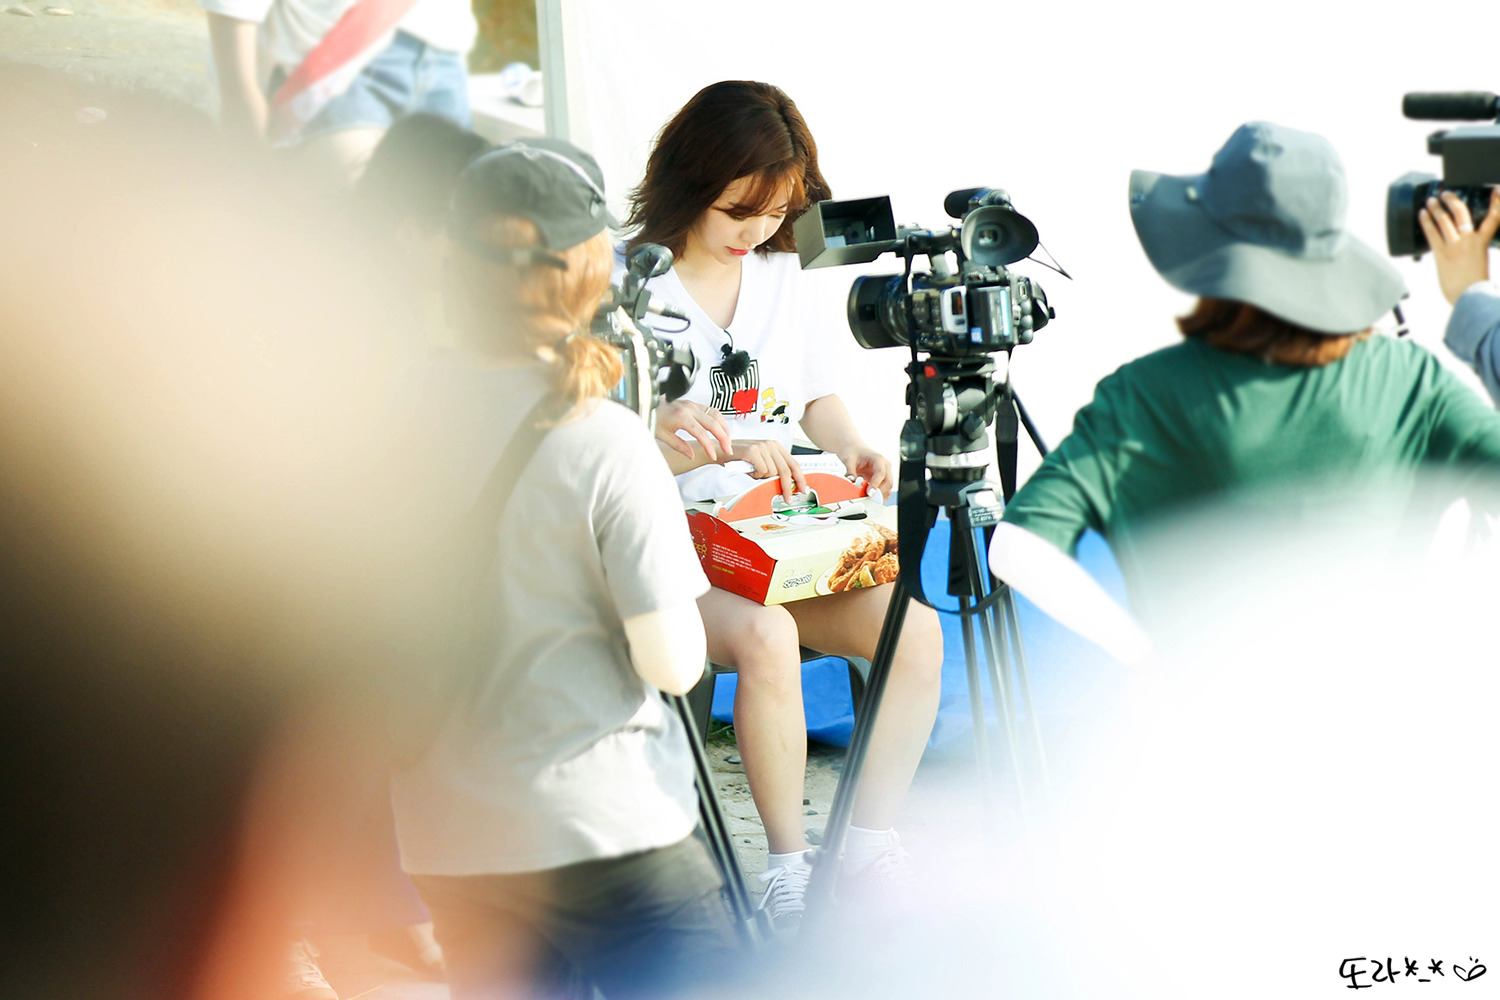 [PIC][16-05-2016]Sunny ghi hình cho chương trình "재래시장 살리자" của kênh JTBC tại Busan vào hôm nay - Page 12 212472425950EEA8344702